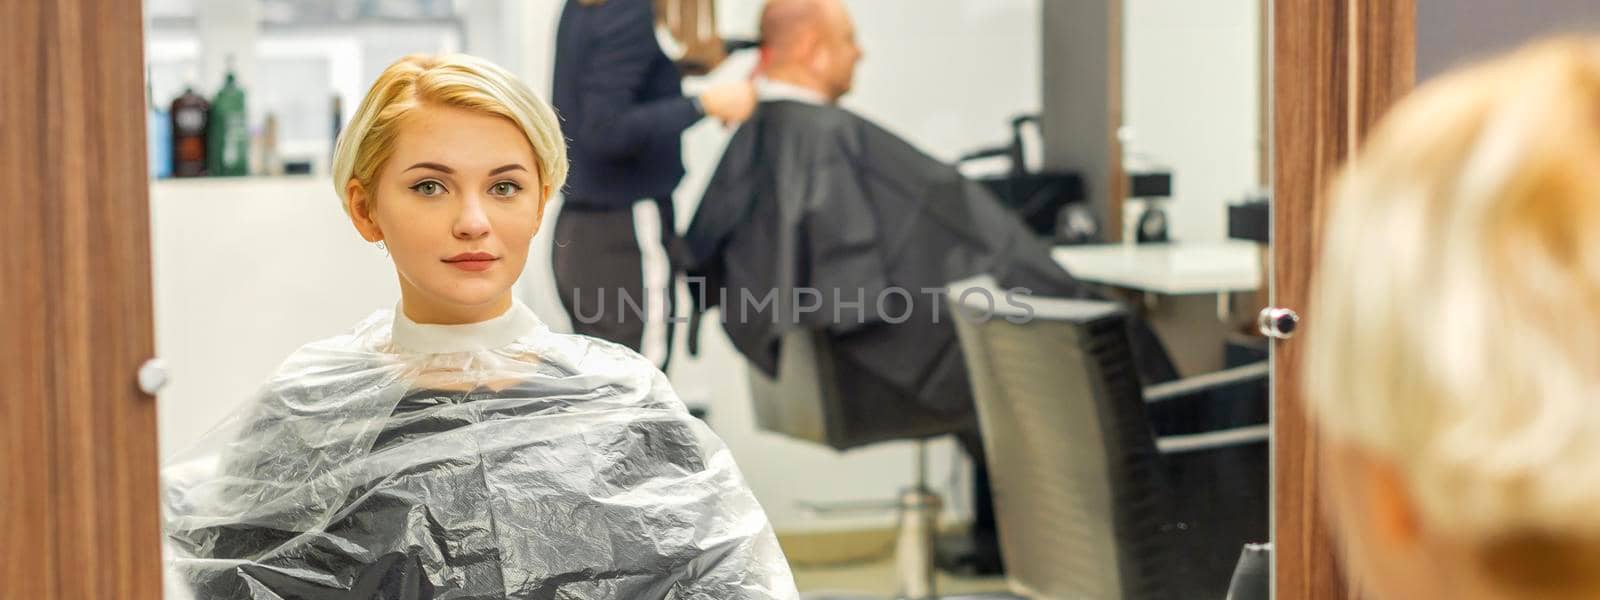 Female client waiting for hairdresser by okskukuruza